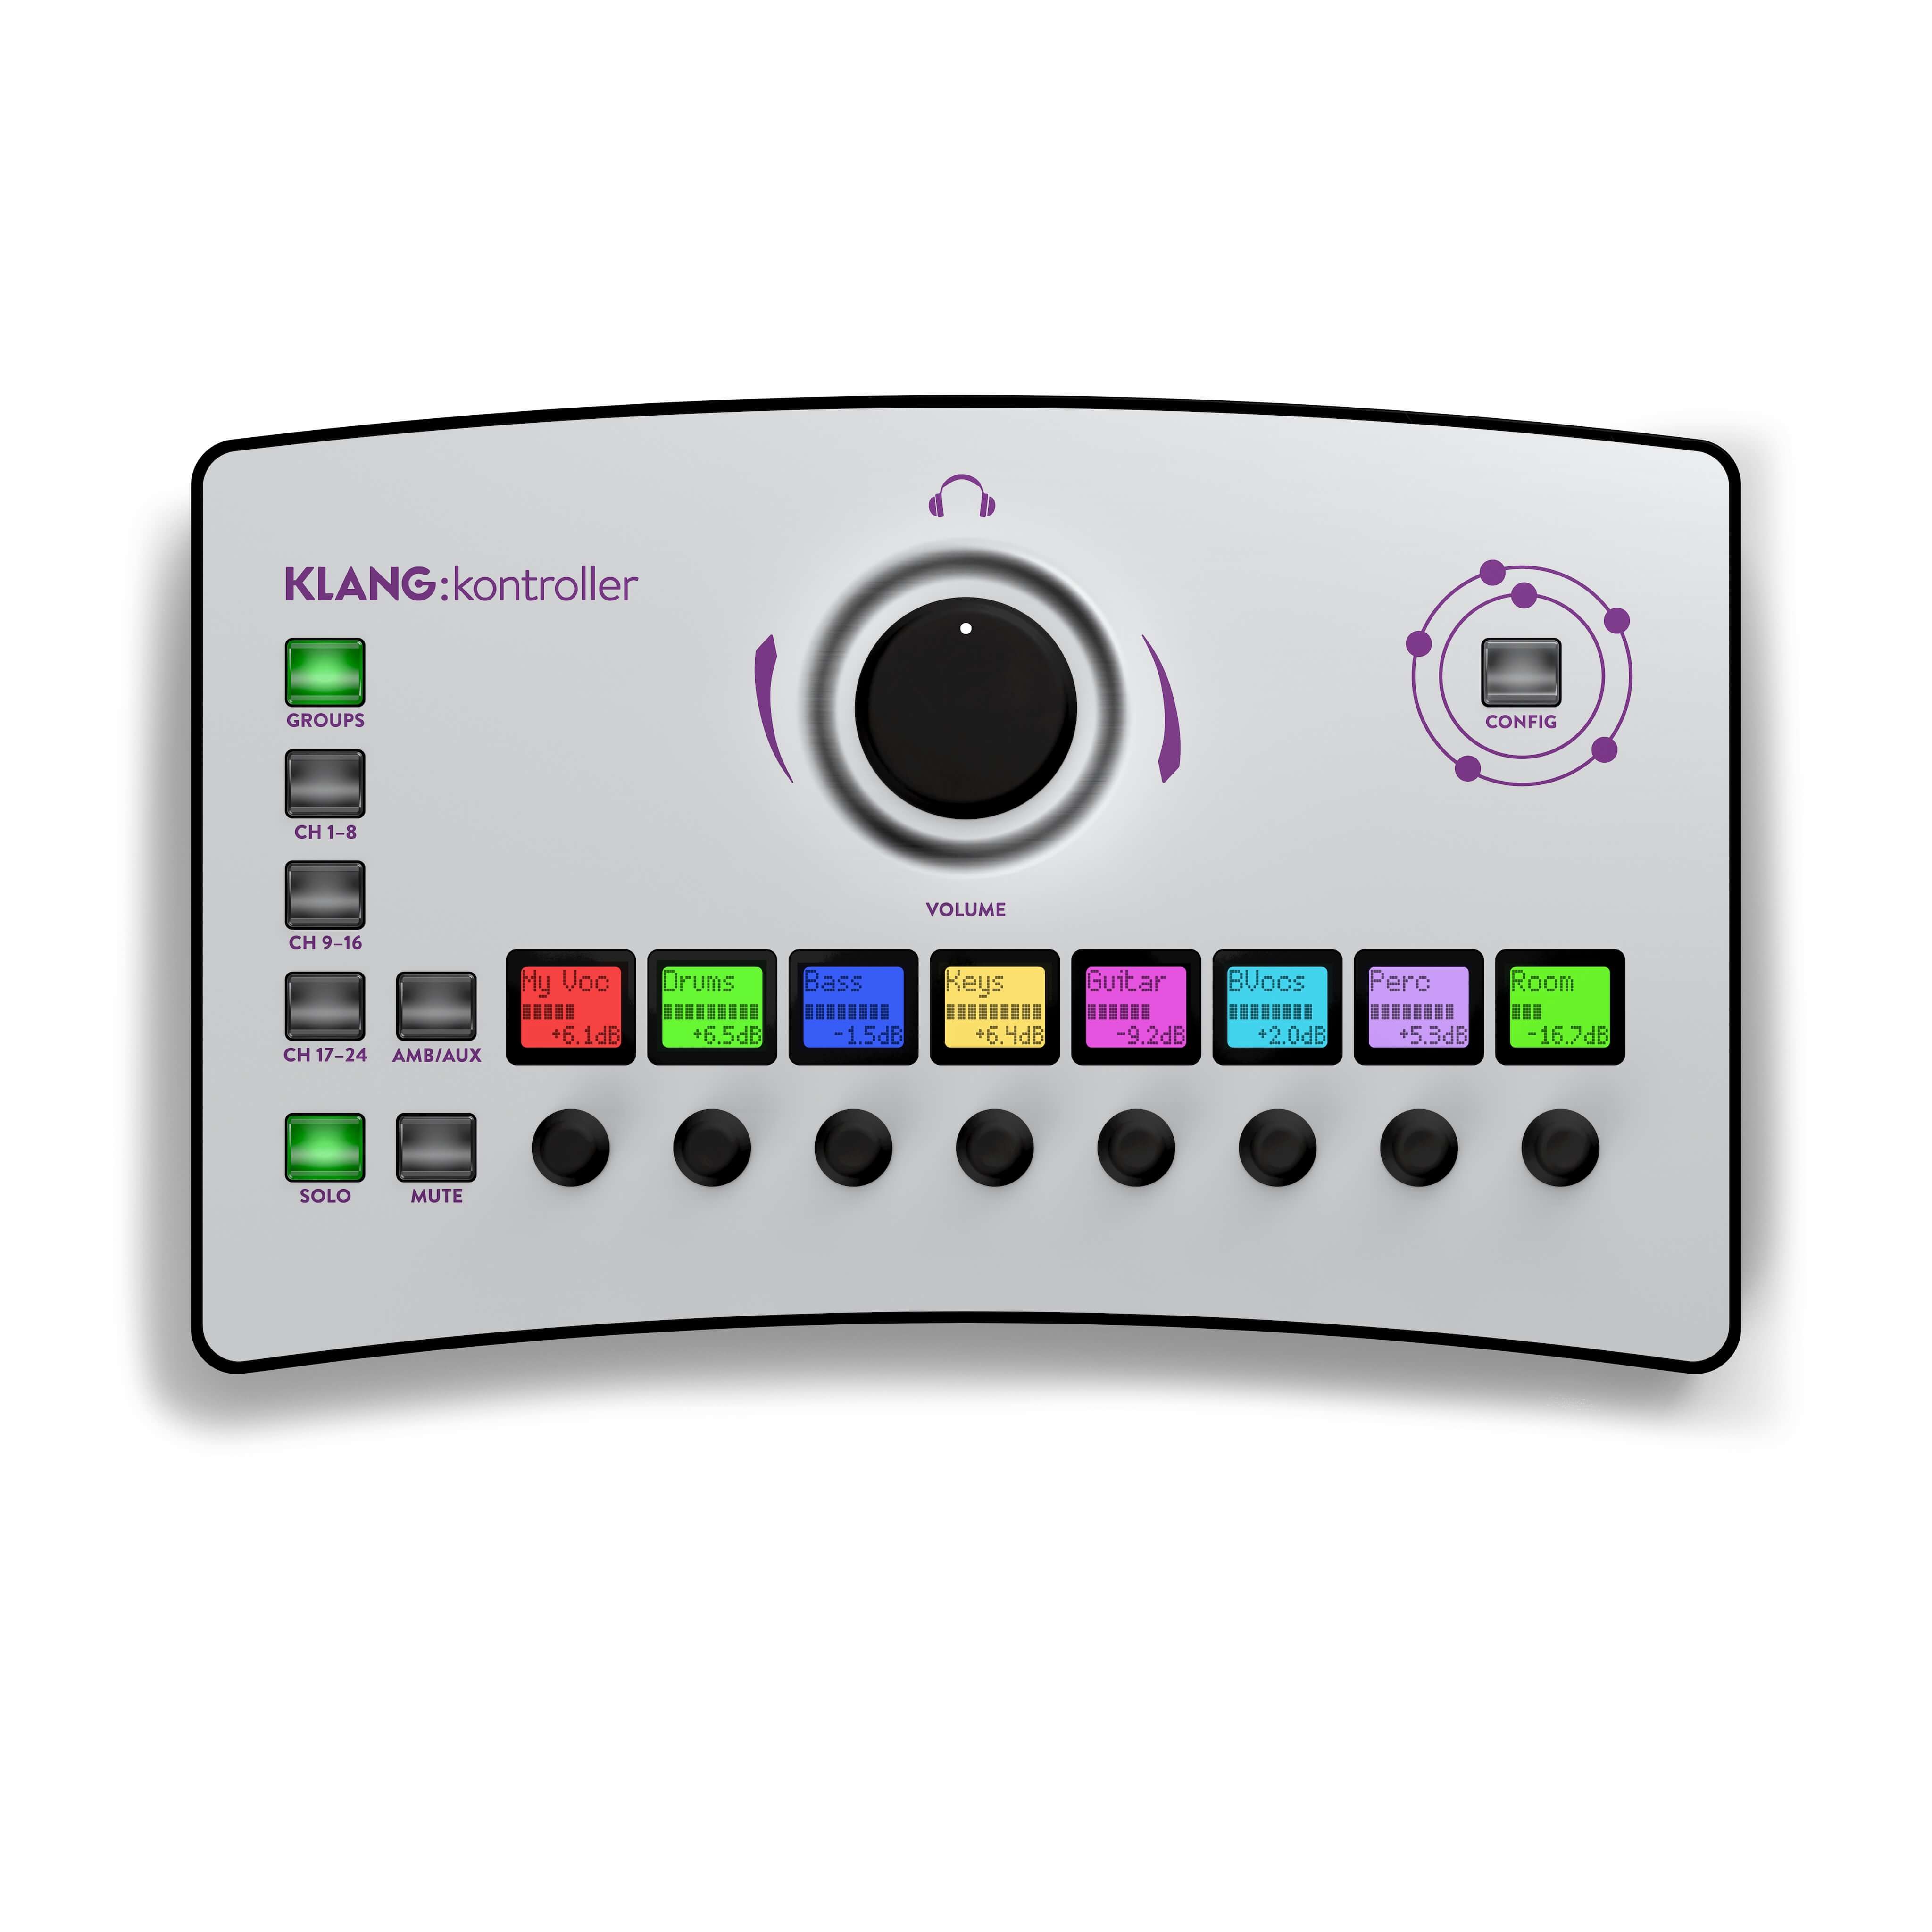 Klang kontroller - Immersive Personal Monitor Mixer and Headphone Amp, top